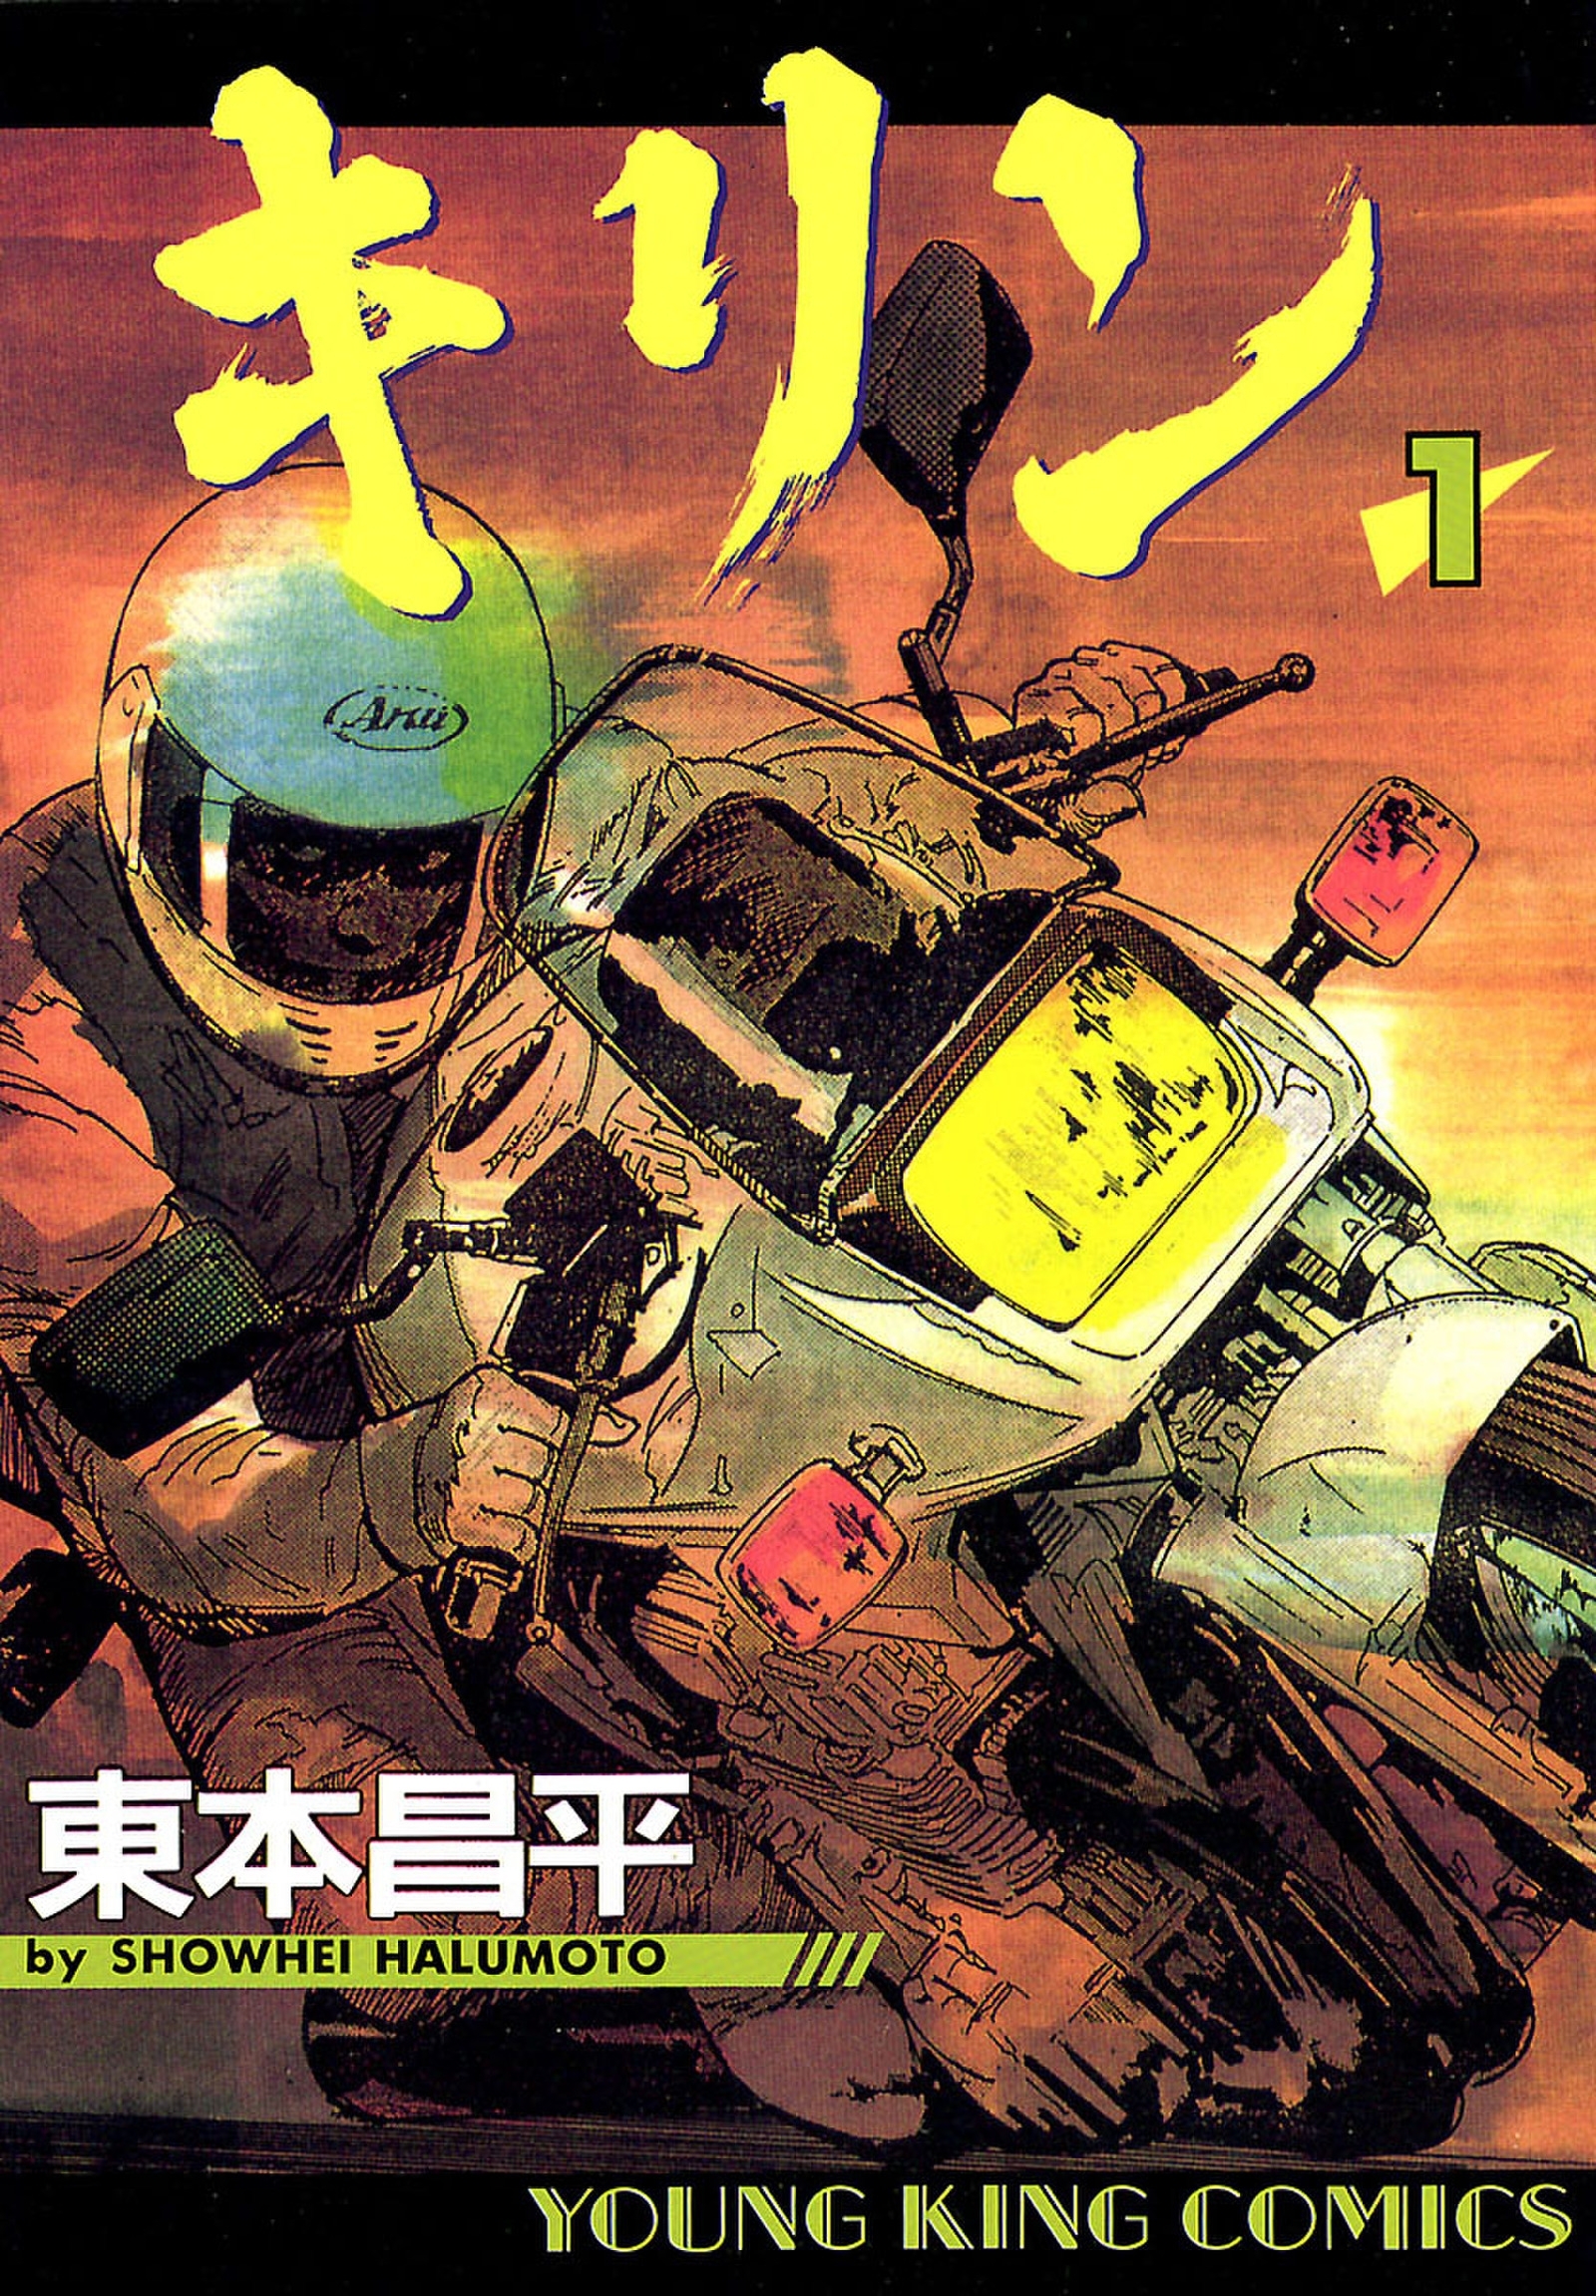 バイク漫画10選 読めばバイクの魅力にハマる Amebaマンガ 旧 読書のお時間です